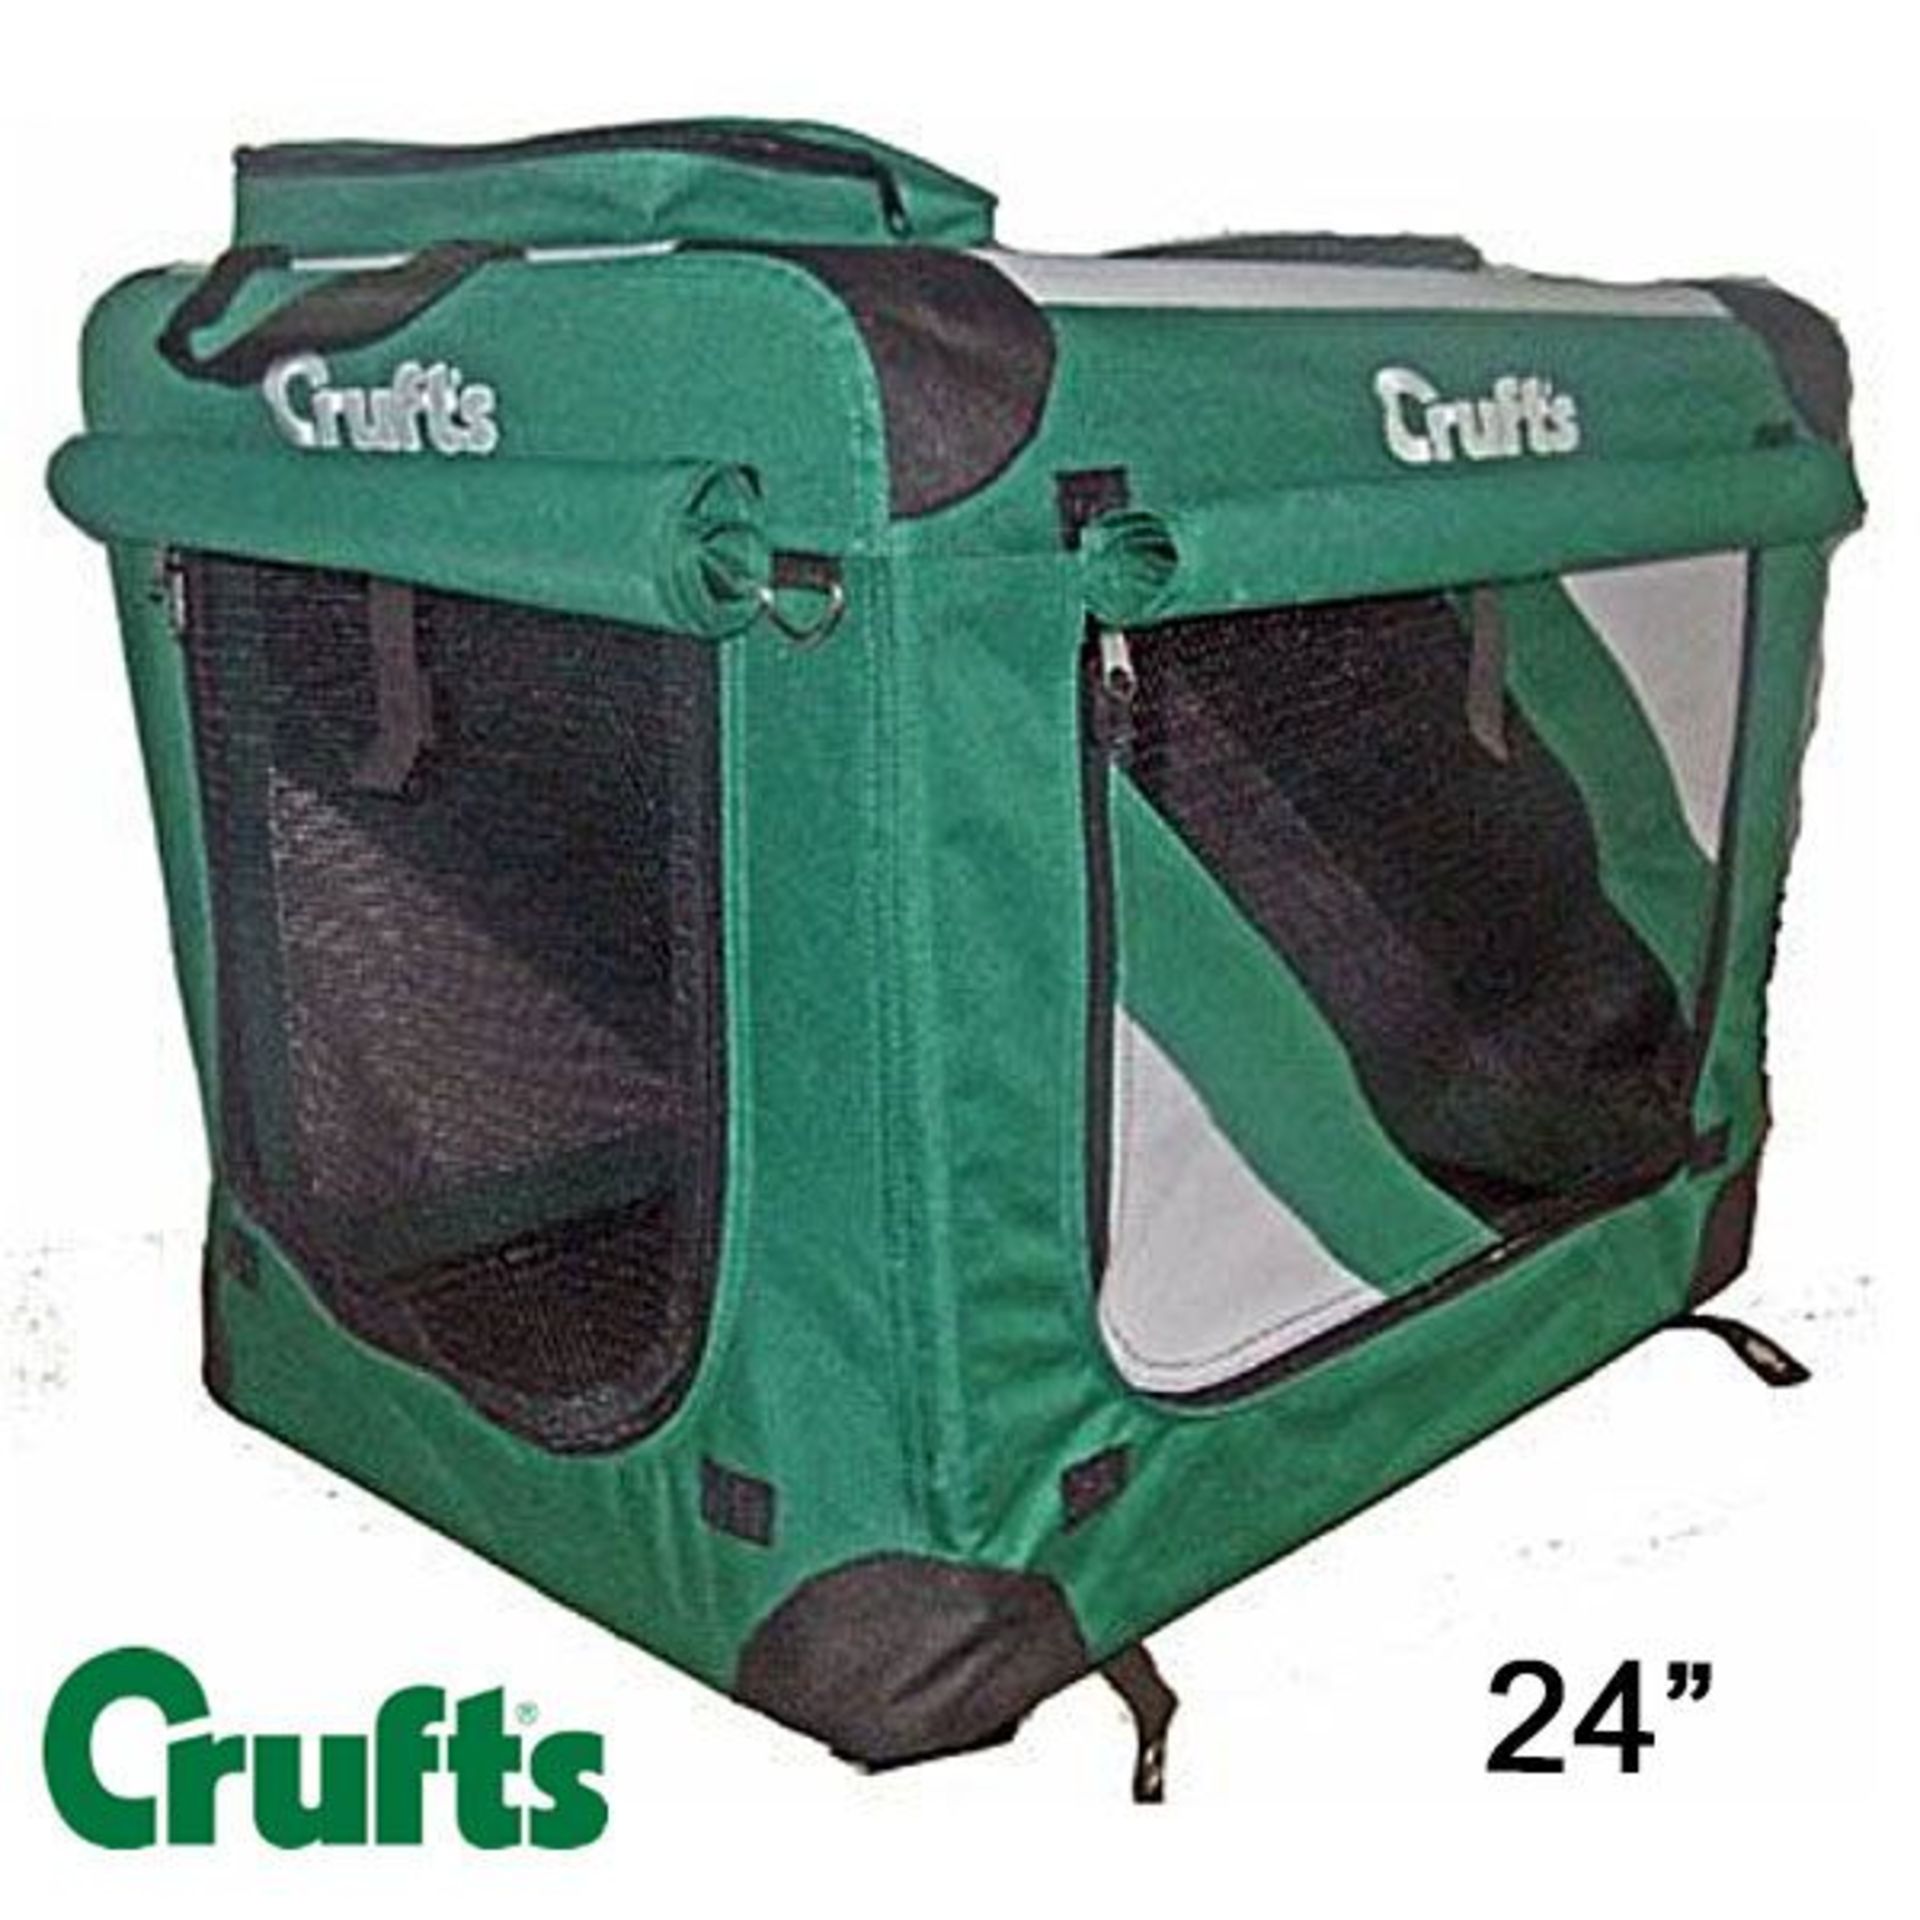 Crufts Soft Crate 24" | RRP £56.00